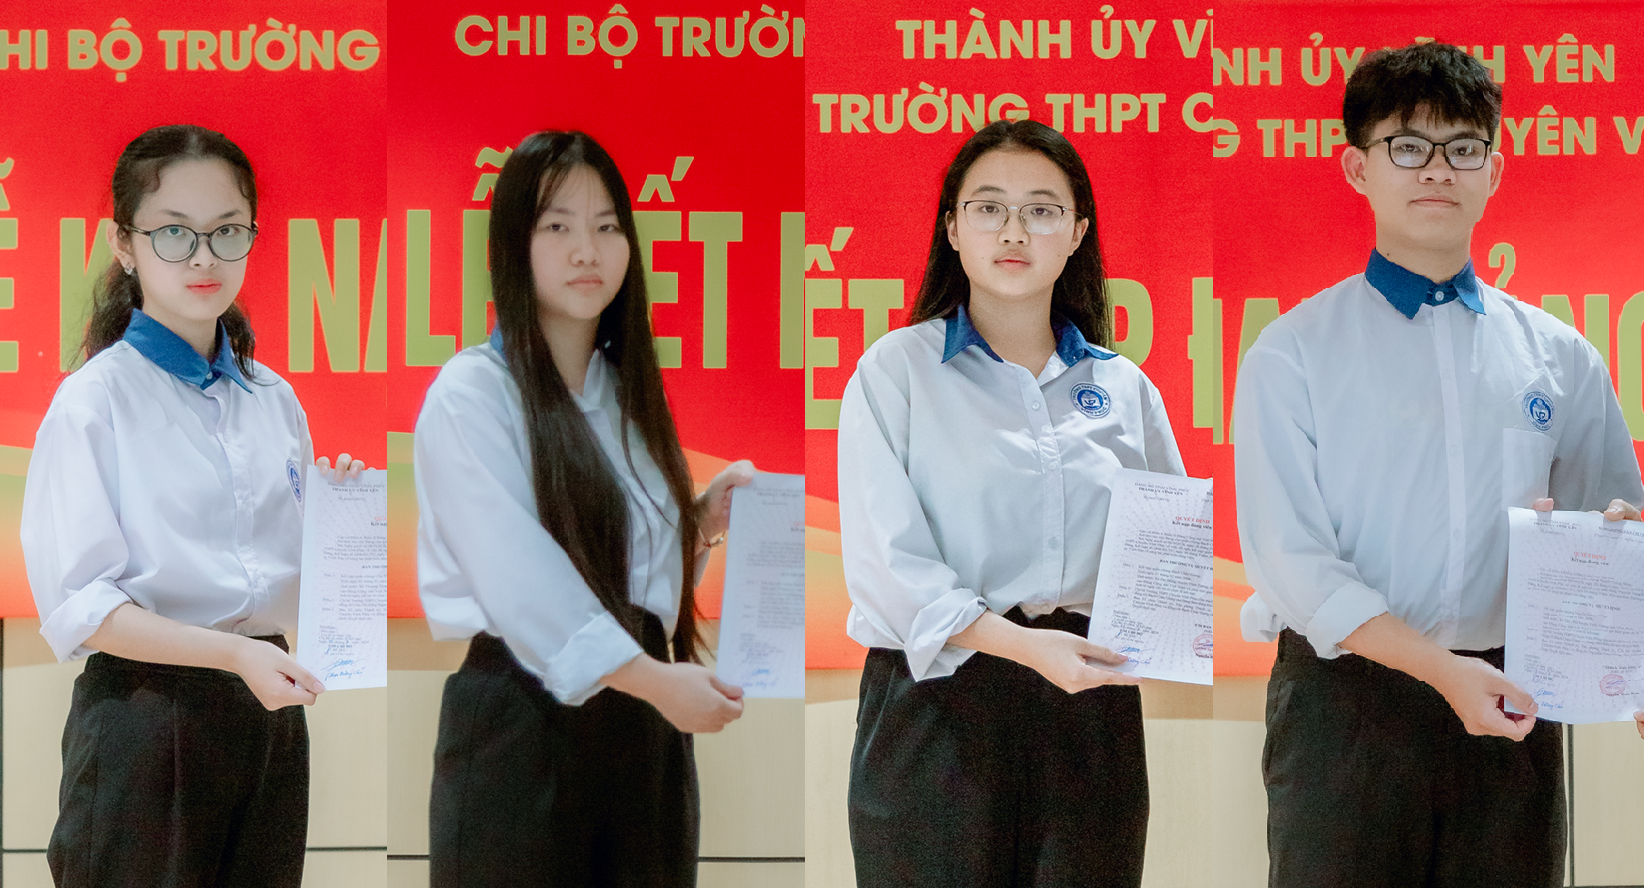 Shop cho thuê đồng phục học sinh Hàn Quốc | Chụp Ảnh Kỷ Yếu Trọn Gói Tại TP  HCM